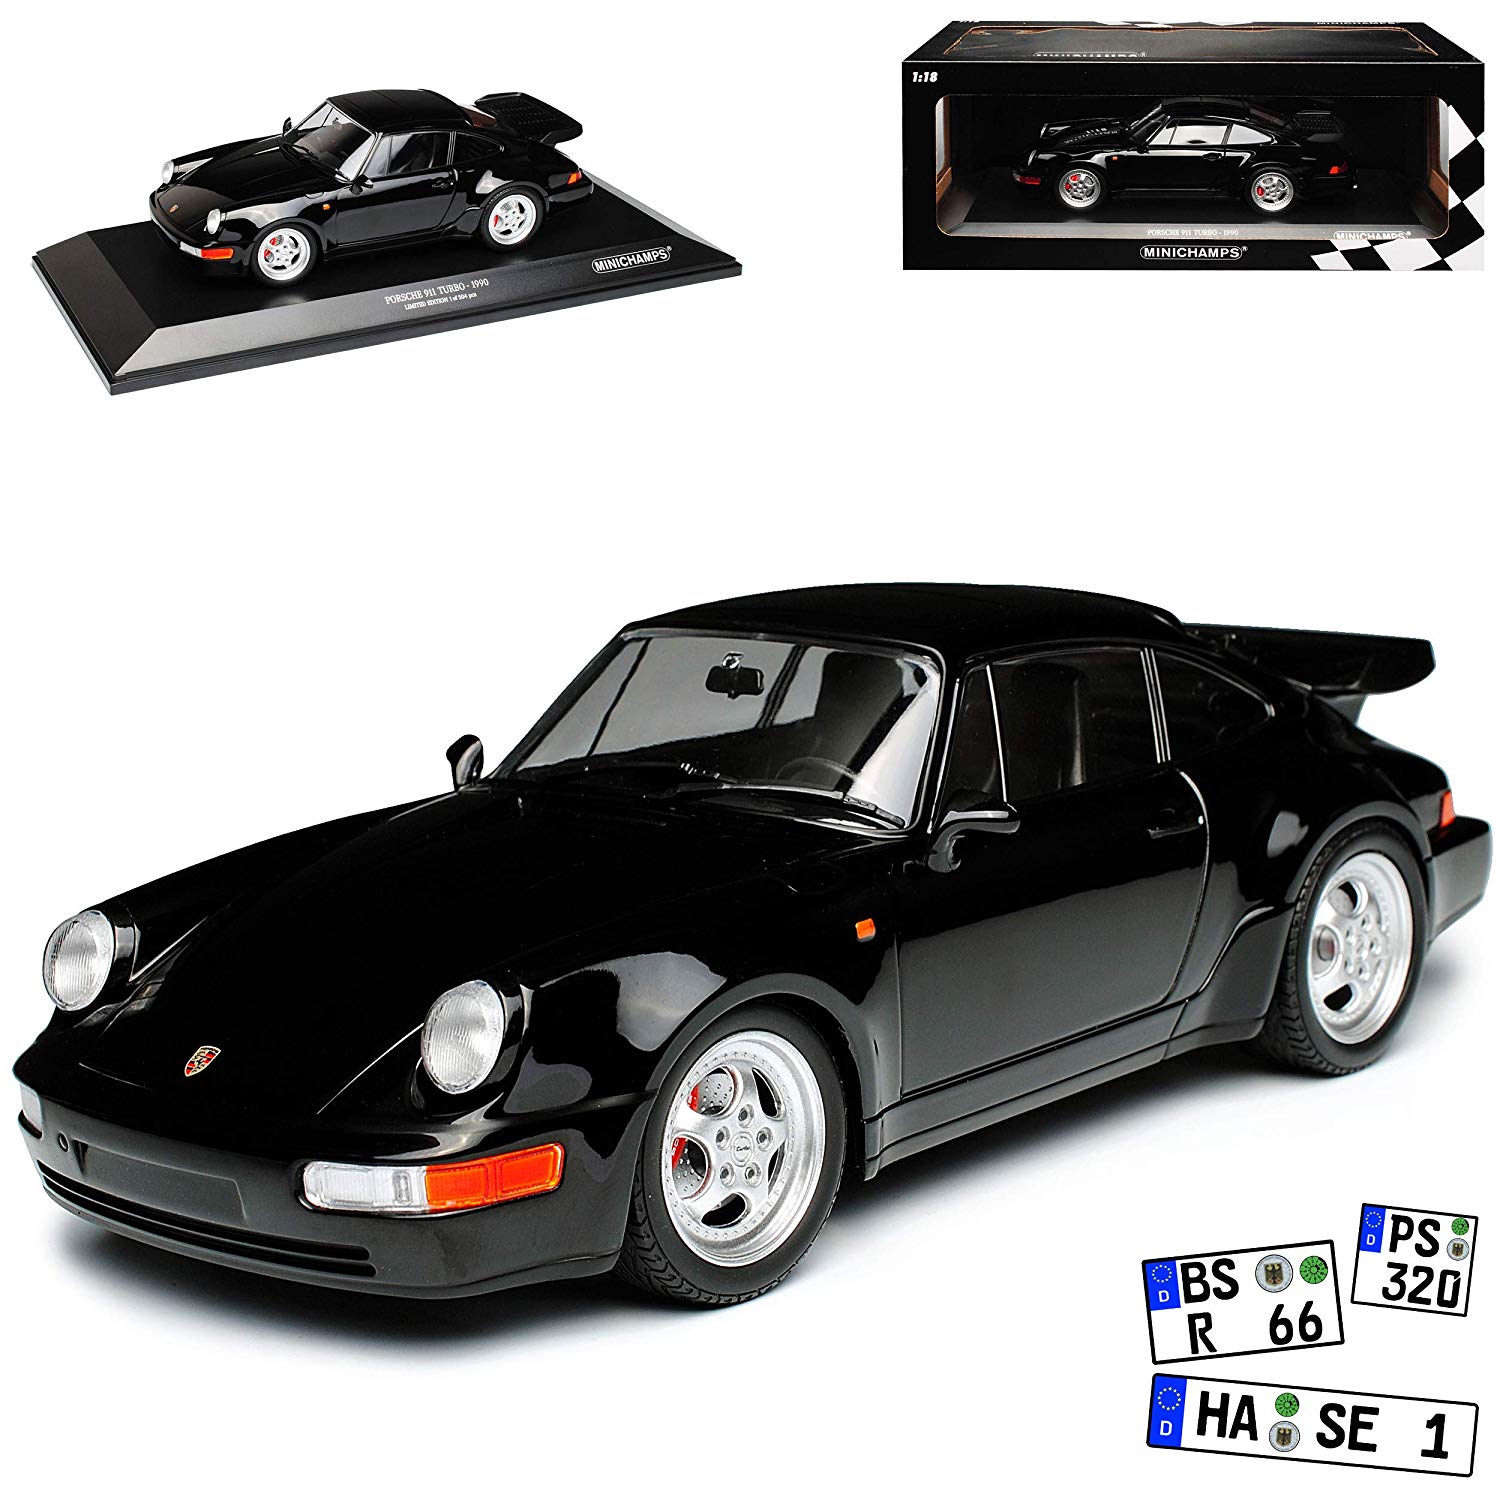 ミニチャンプス 1/18 ポルシェ 911 (964) ターボ 1990 ブラック Porsche 911 (964) Turbo 1990 black Limited Edition 504 pcs